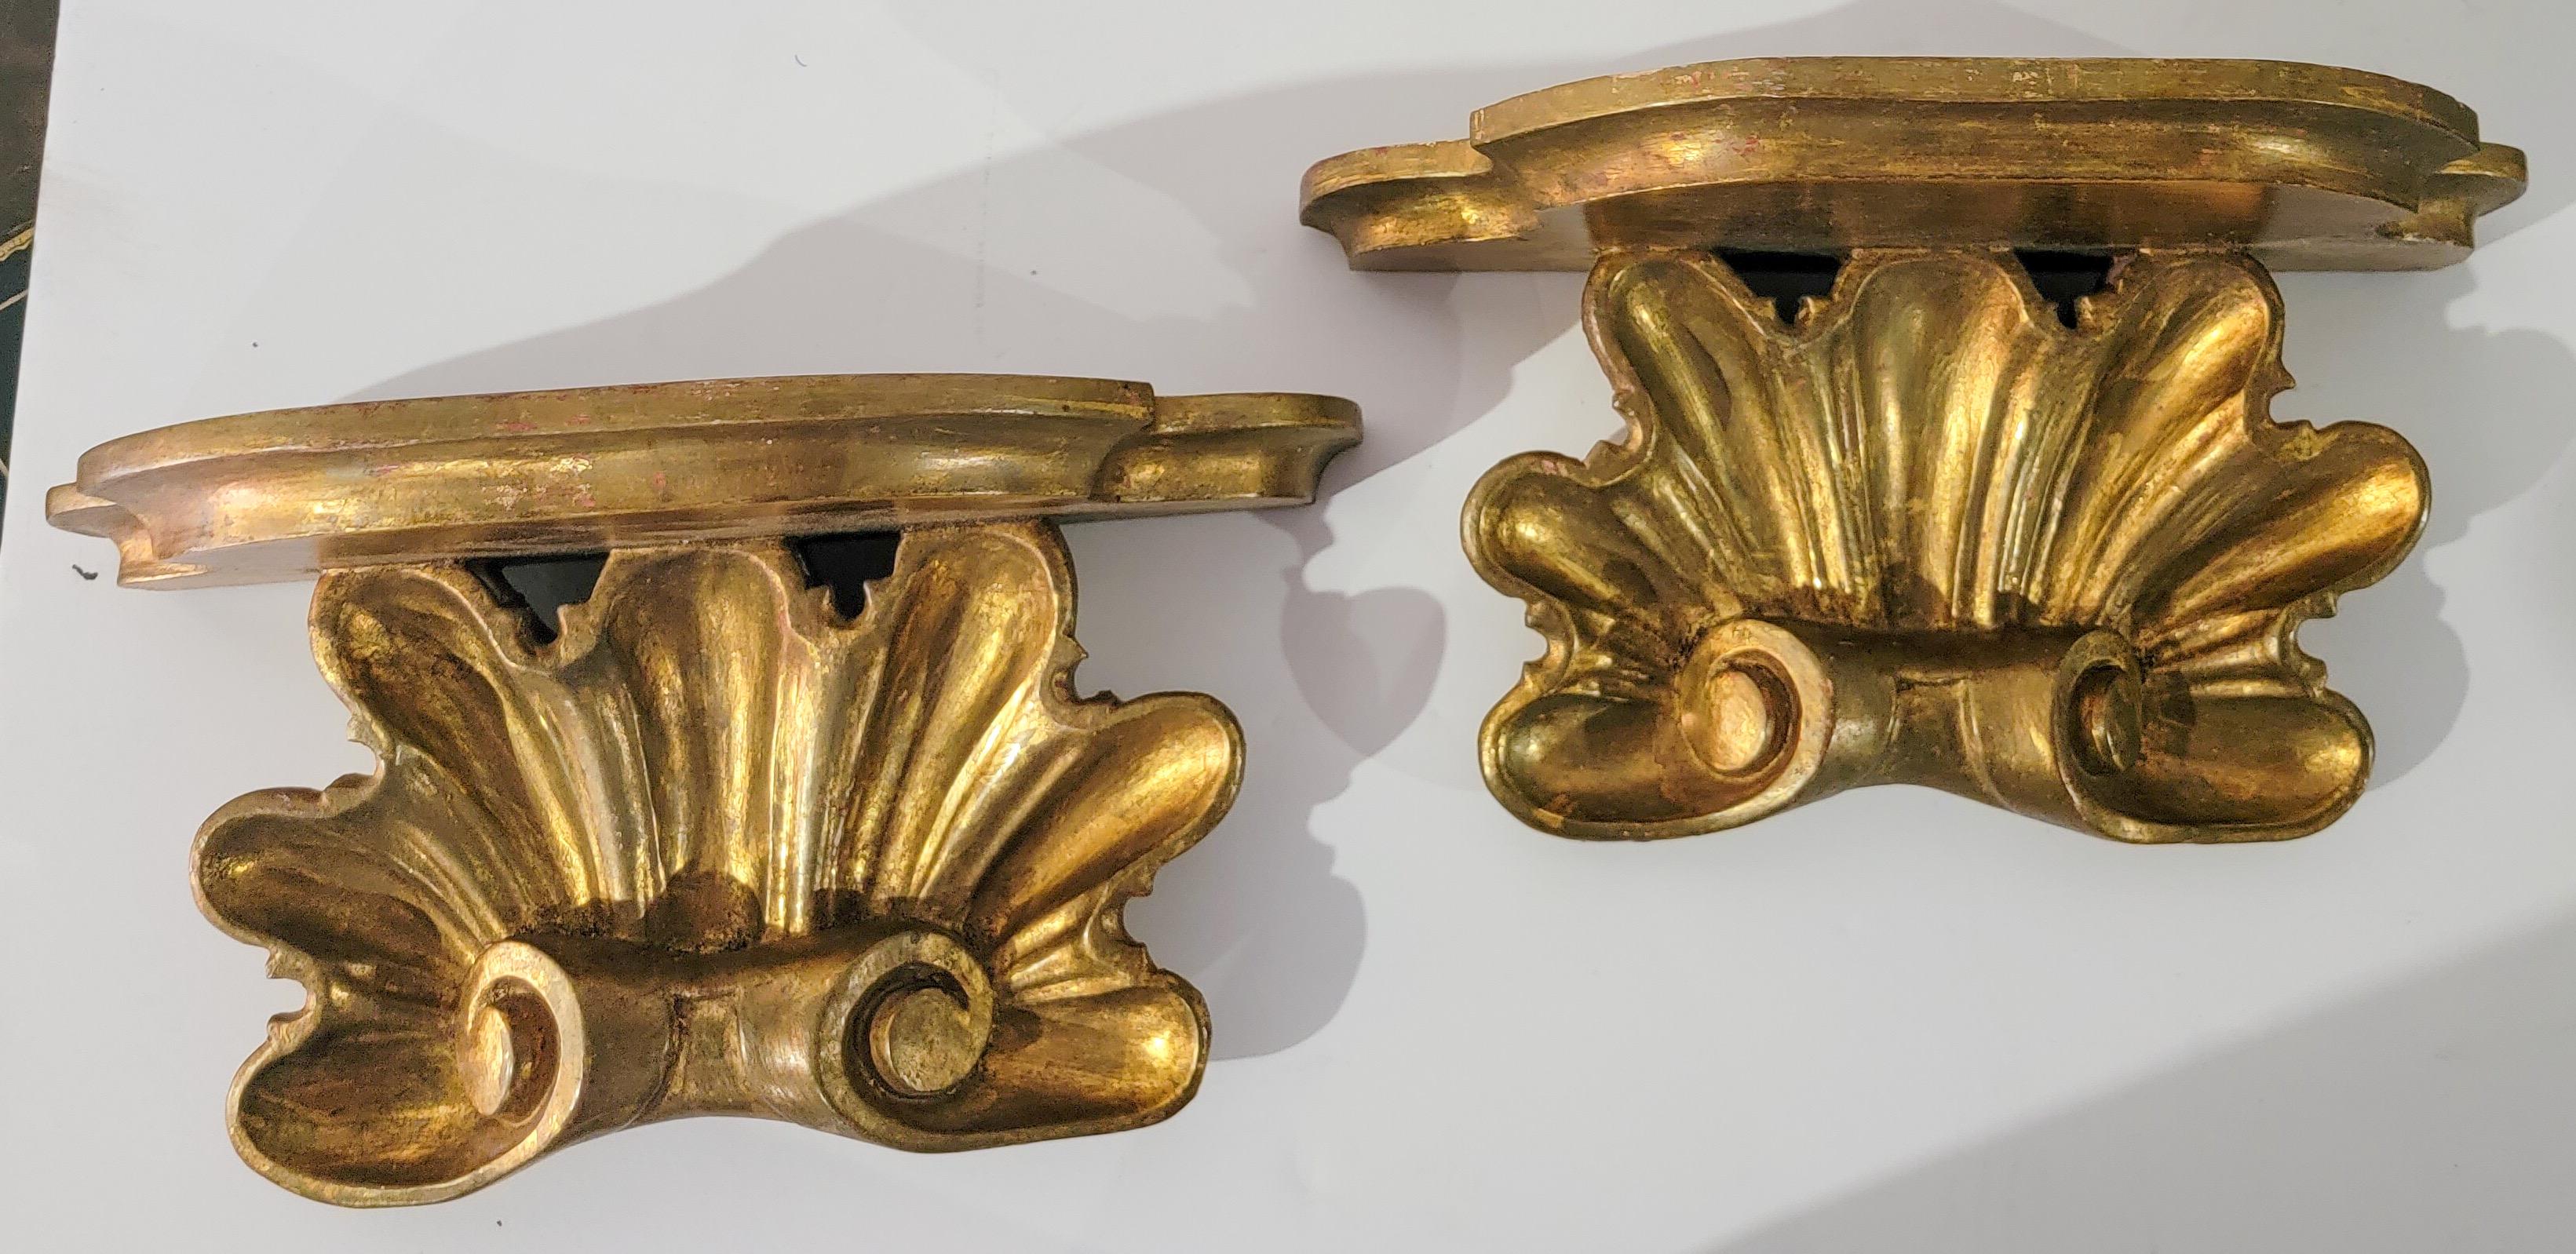 Il s'agit d'une paire de supports muraux de style Rococo en bois doré sculpté italien en forme de coquille. Ils sont très beaux ! Usure appropriée à l'âge avec une patine merveilleuse !